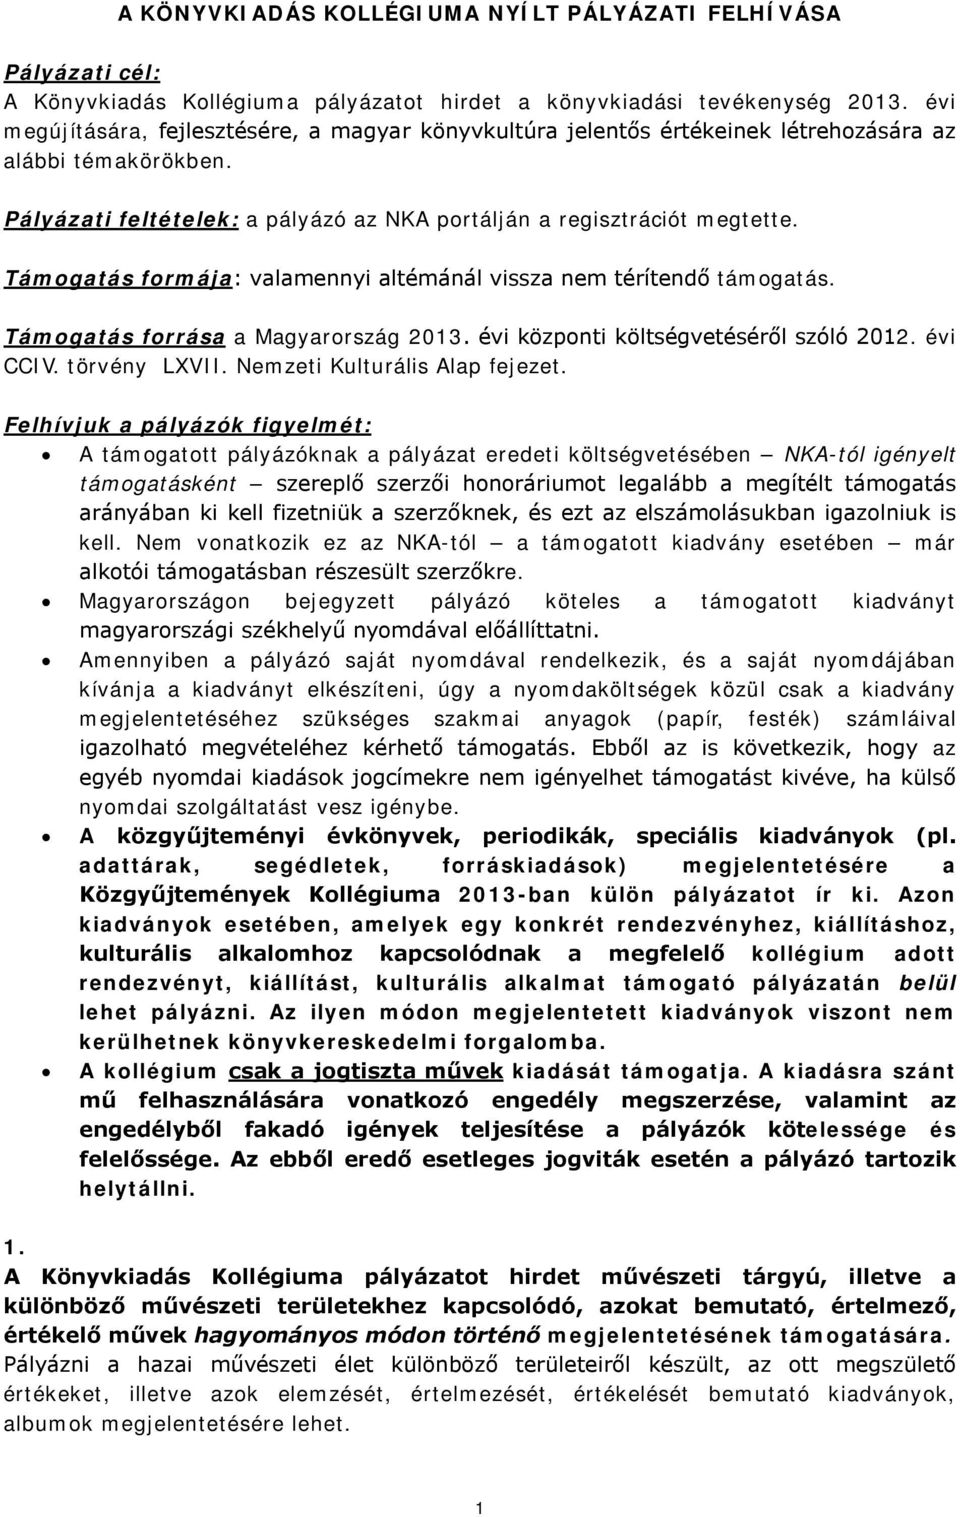 Támogatás formája: valamennyi altémánál vissza nem térítendő támogatás. Támogatás forrása a Magyarország 2013. évi központi költségvetéséről szóló 2012. évi CCIV. törvény LXVII.